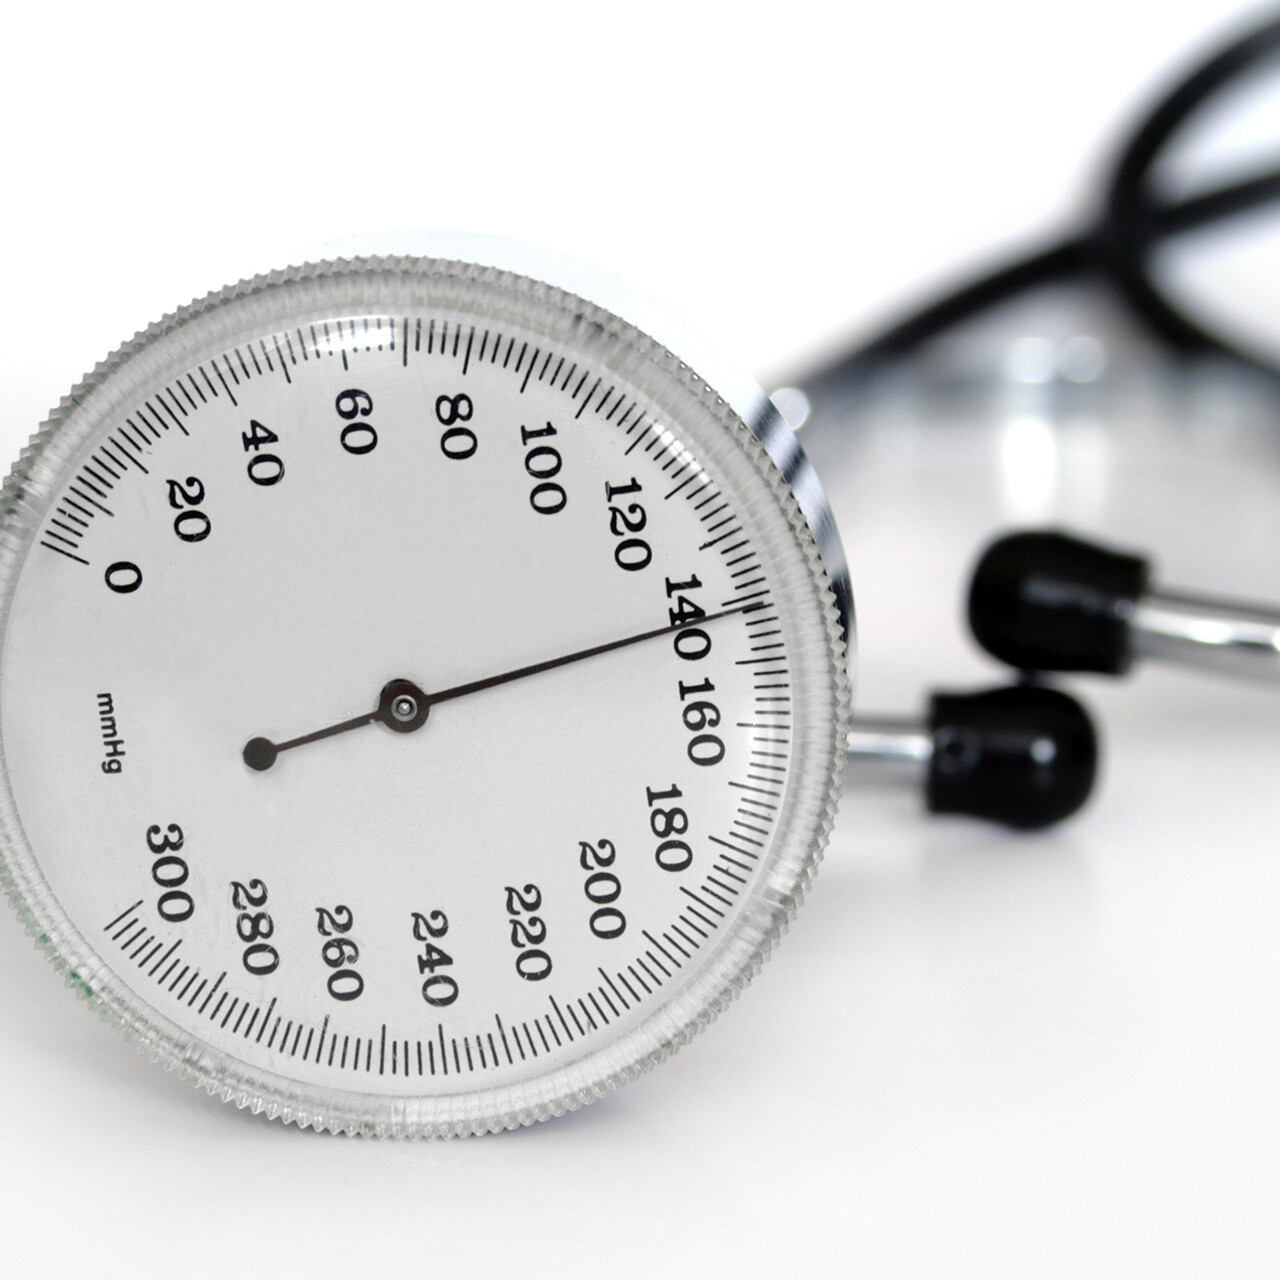 Hoher oder niedriger Blutdruck ist eine sogenannte objektive Pathologie, d. h. es gibt Instrumente, die das Ausmaß objektiv und genau messen können